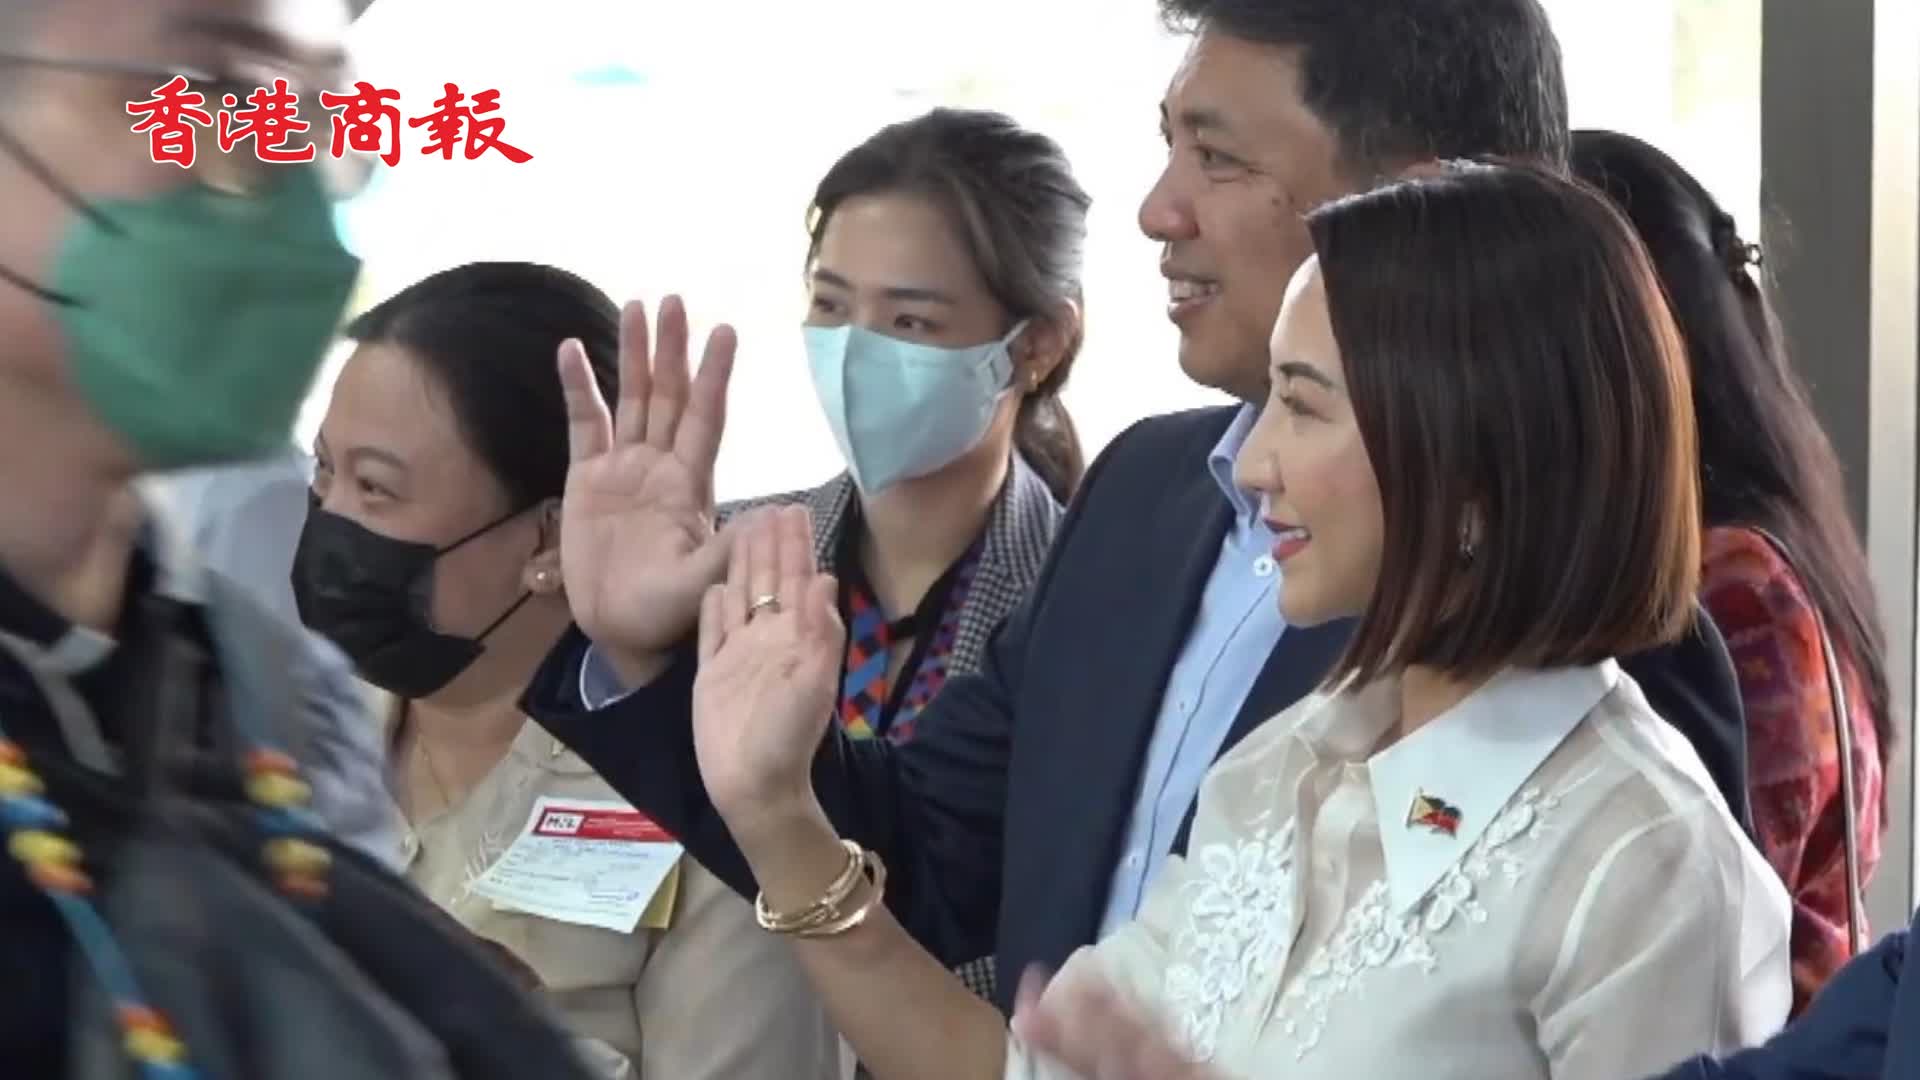 有片 | 菲律賓盛情歡迎中國旅客 旅遊部長到機場迎接